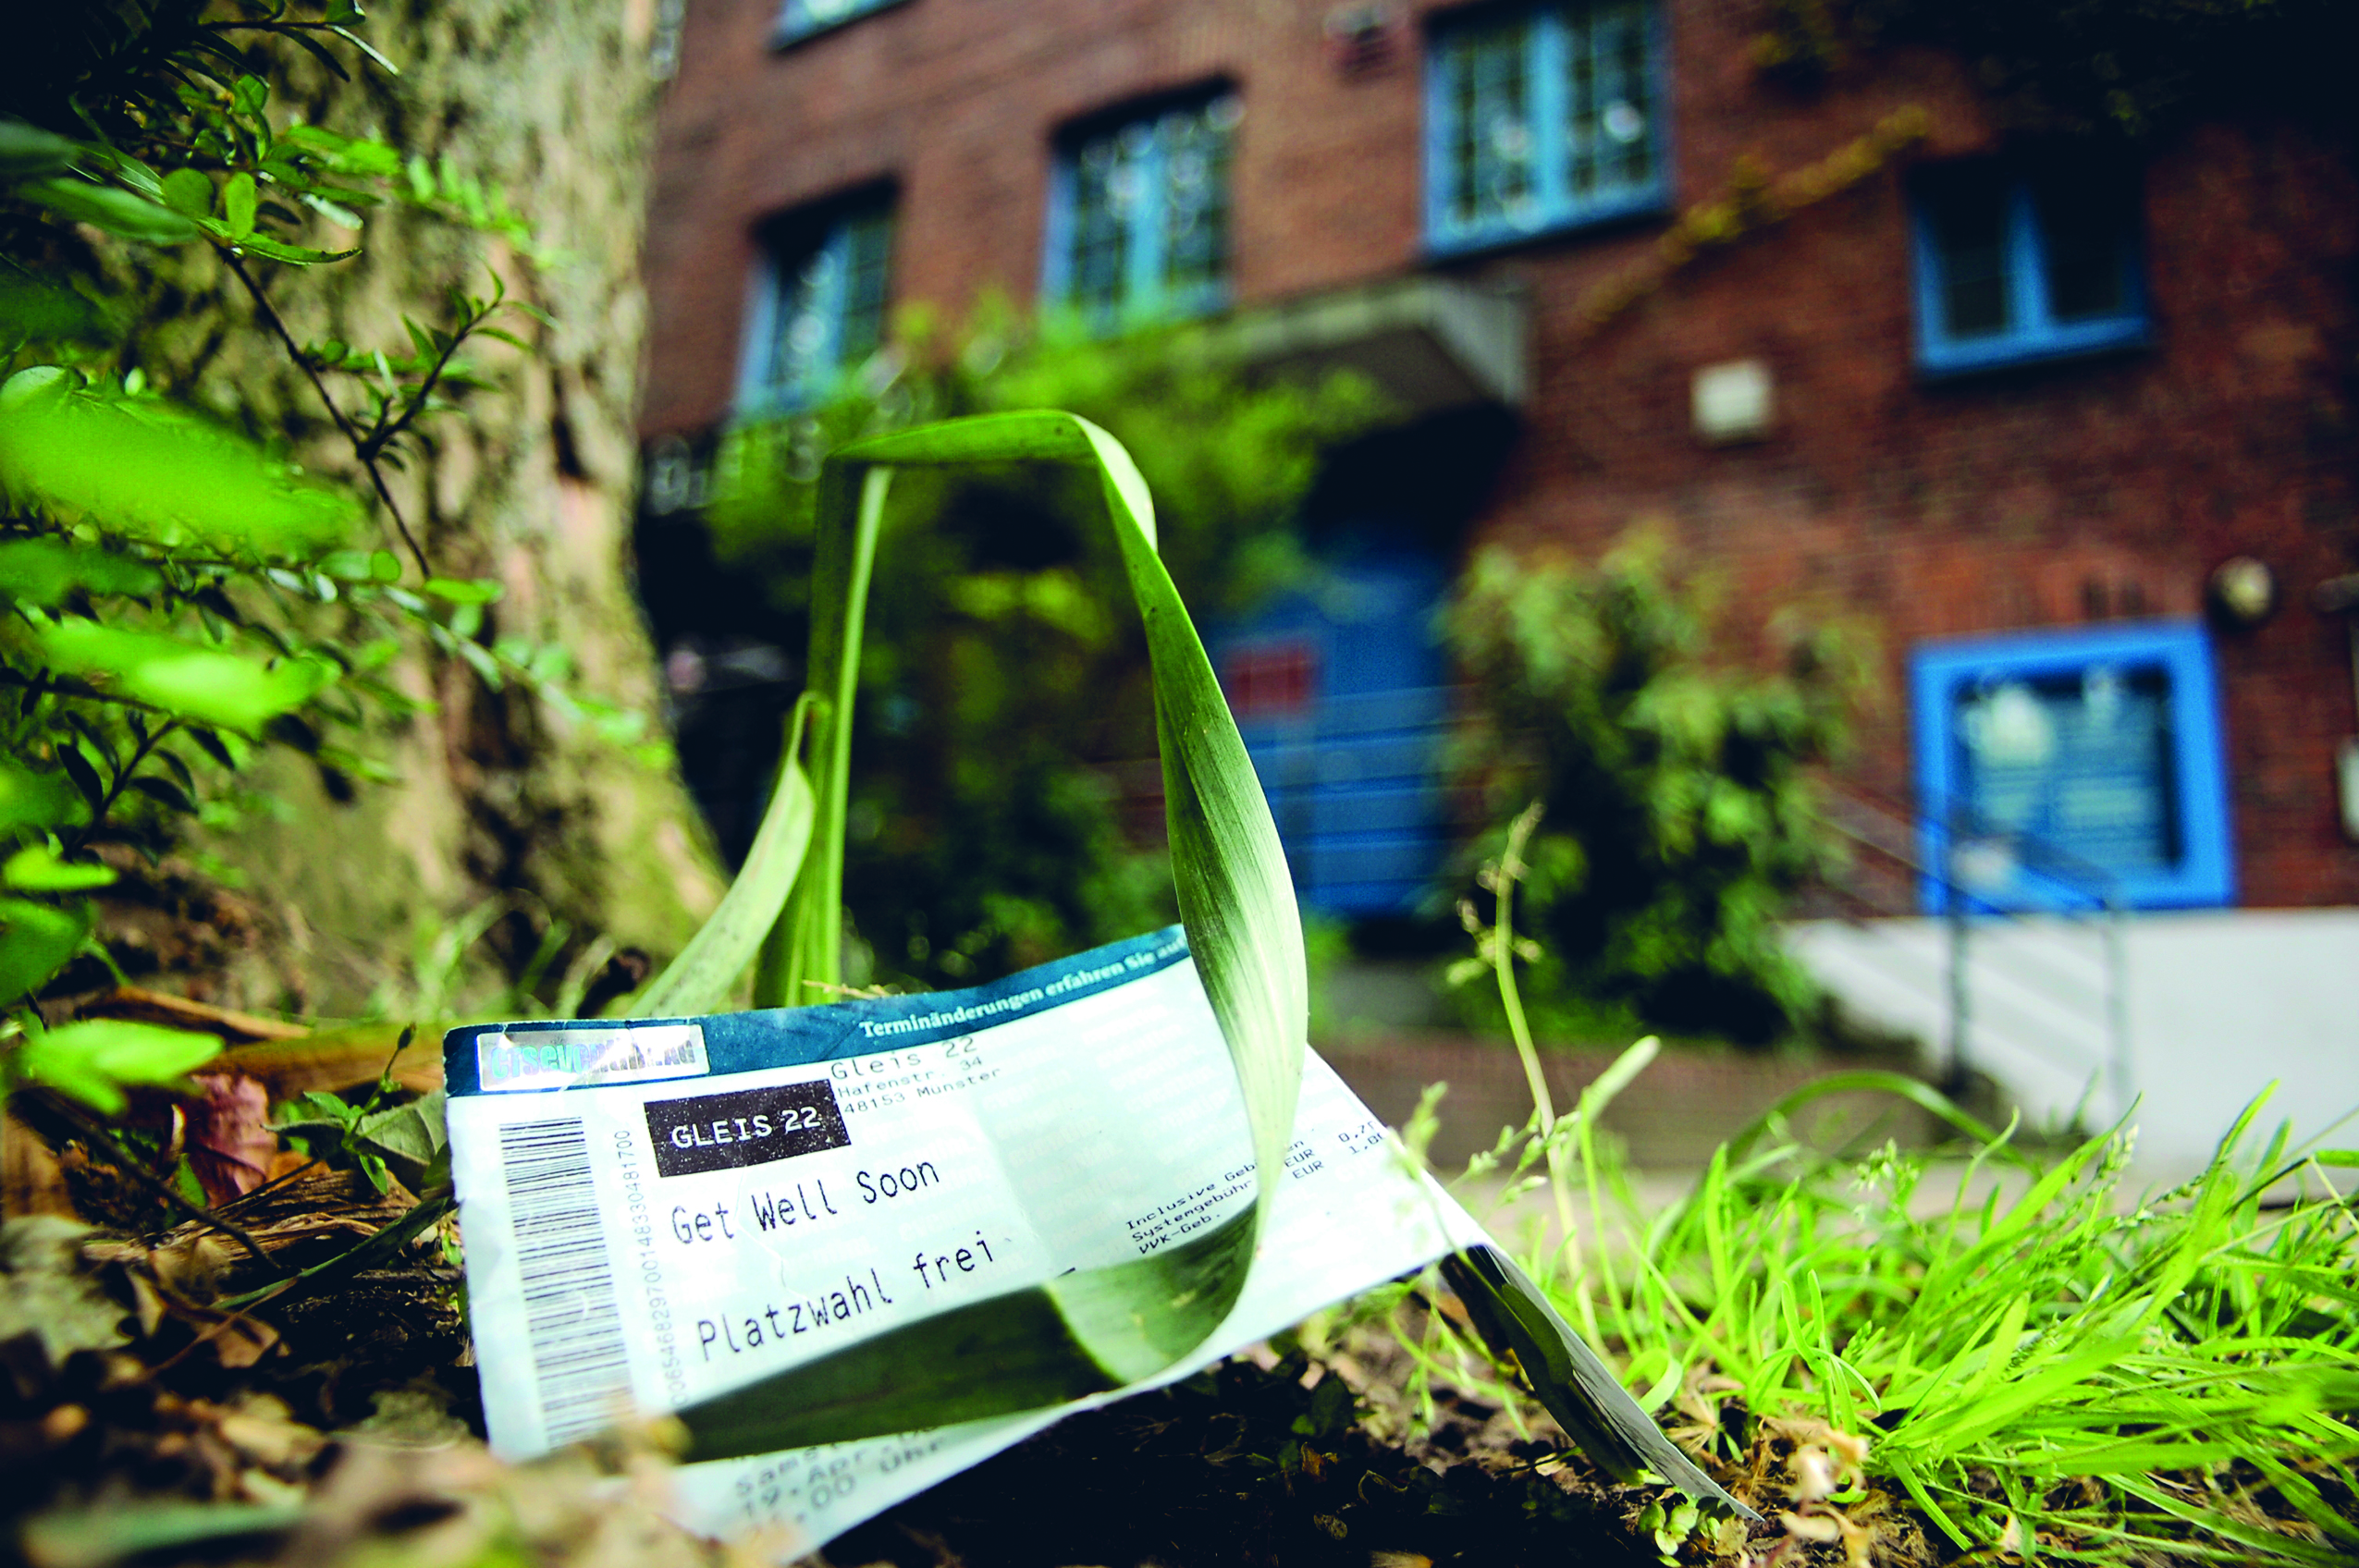 Ein Ticket von Get Well Soon liegt vor dem Gleis22 in Münster (Foto: Oliver Brand)